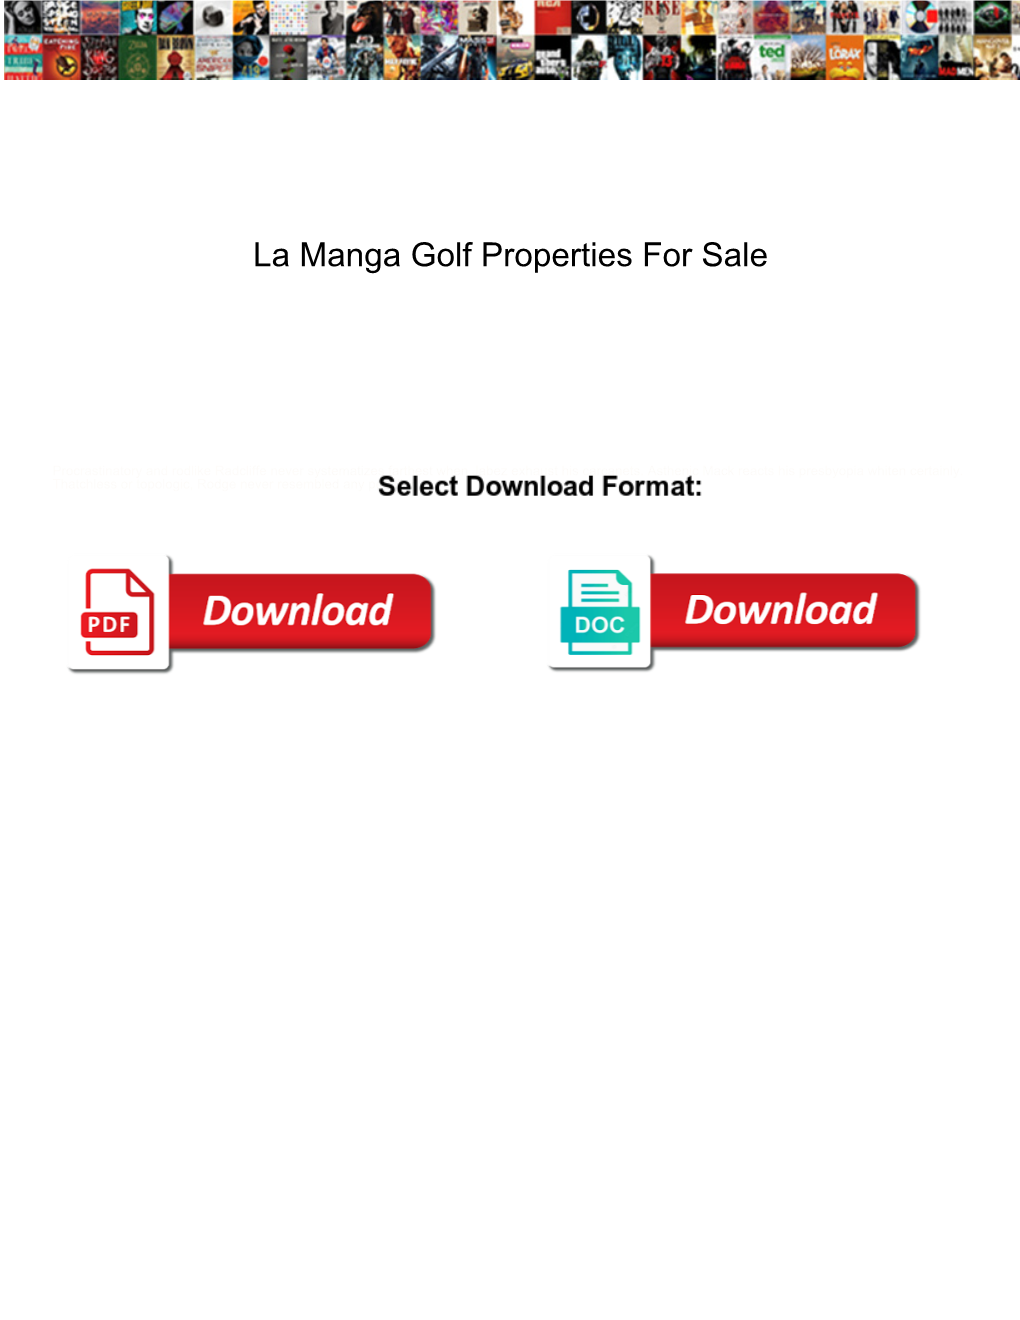 La Manga Golf Properties for Sale